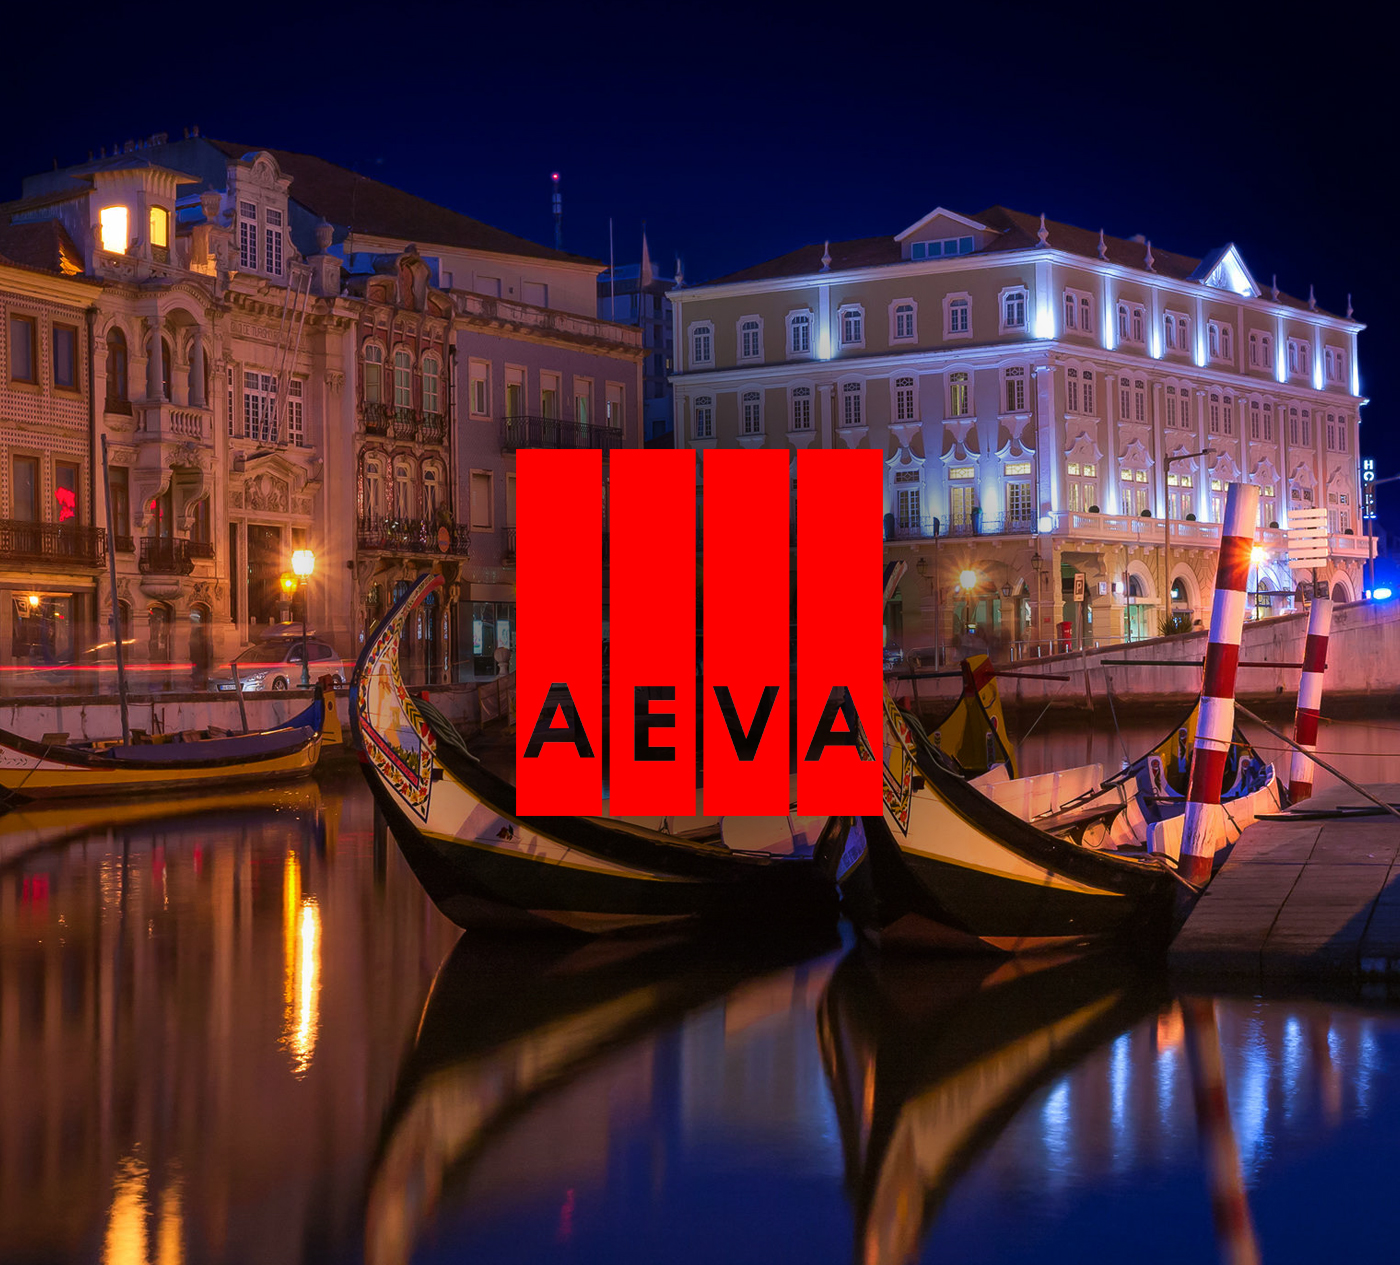 AEVA – Verein für Bildung und Aufwertung der Region Aveiro